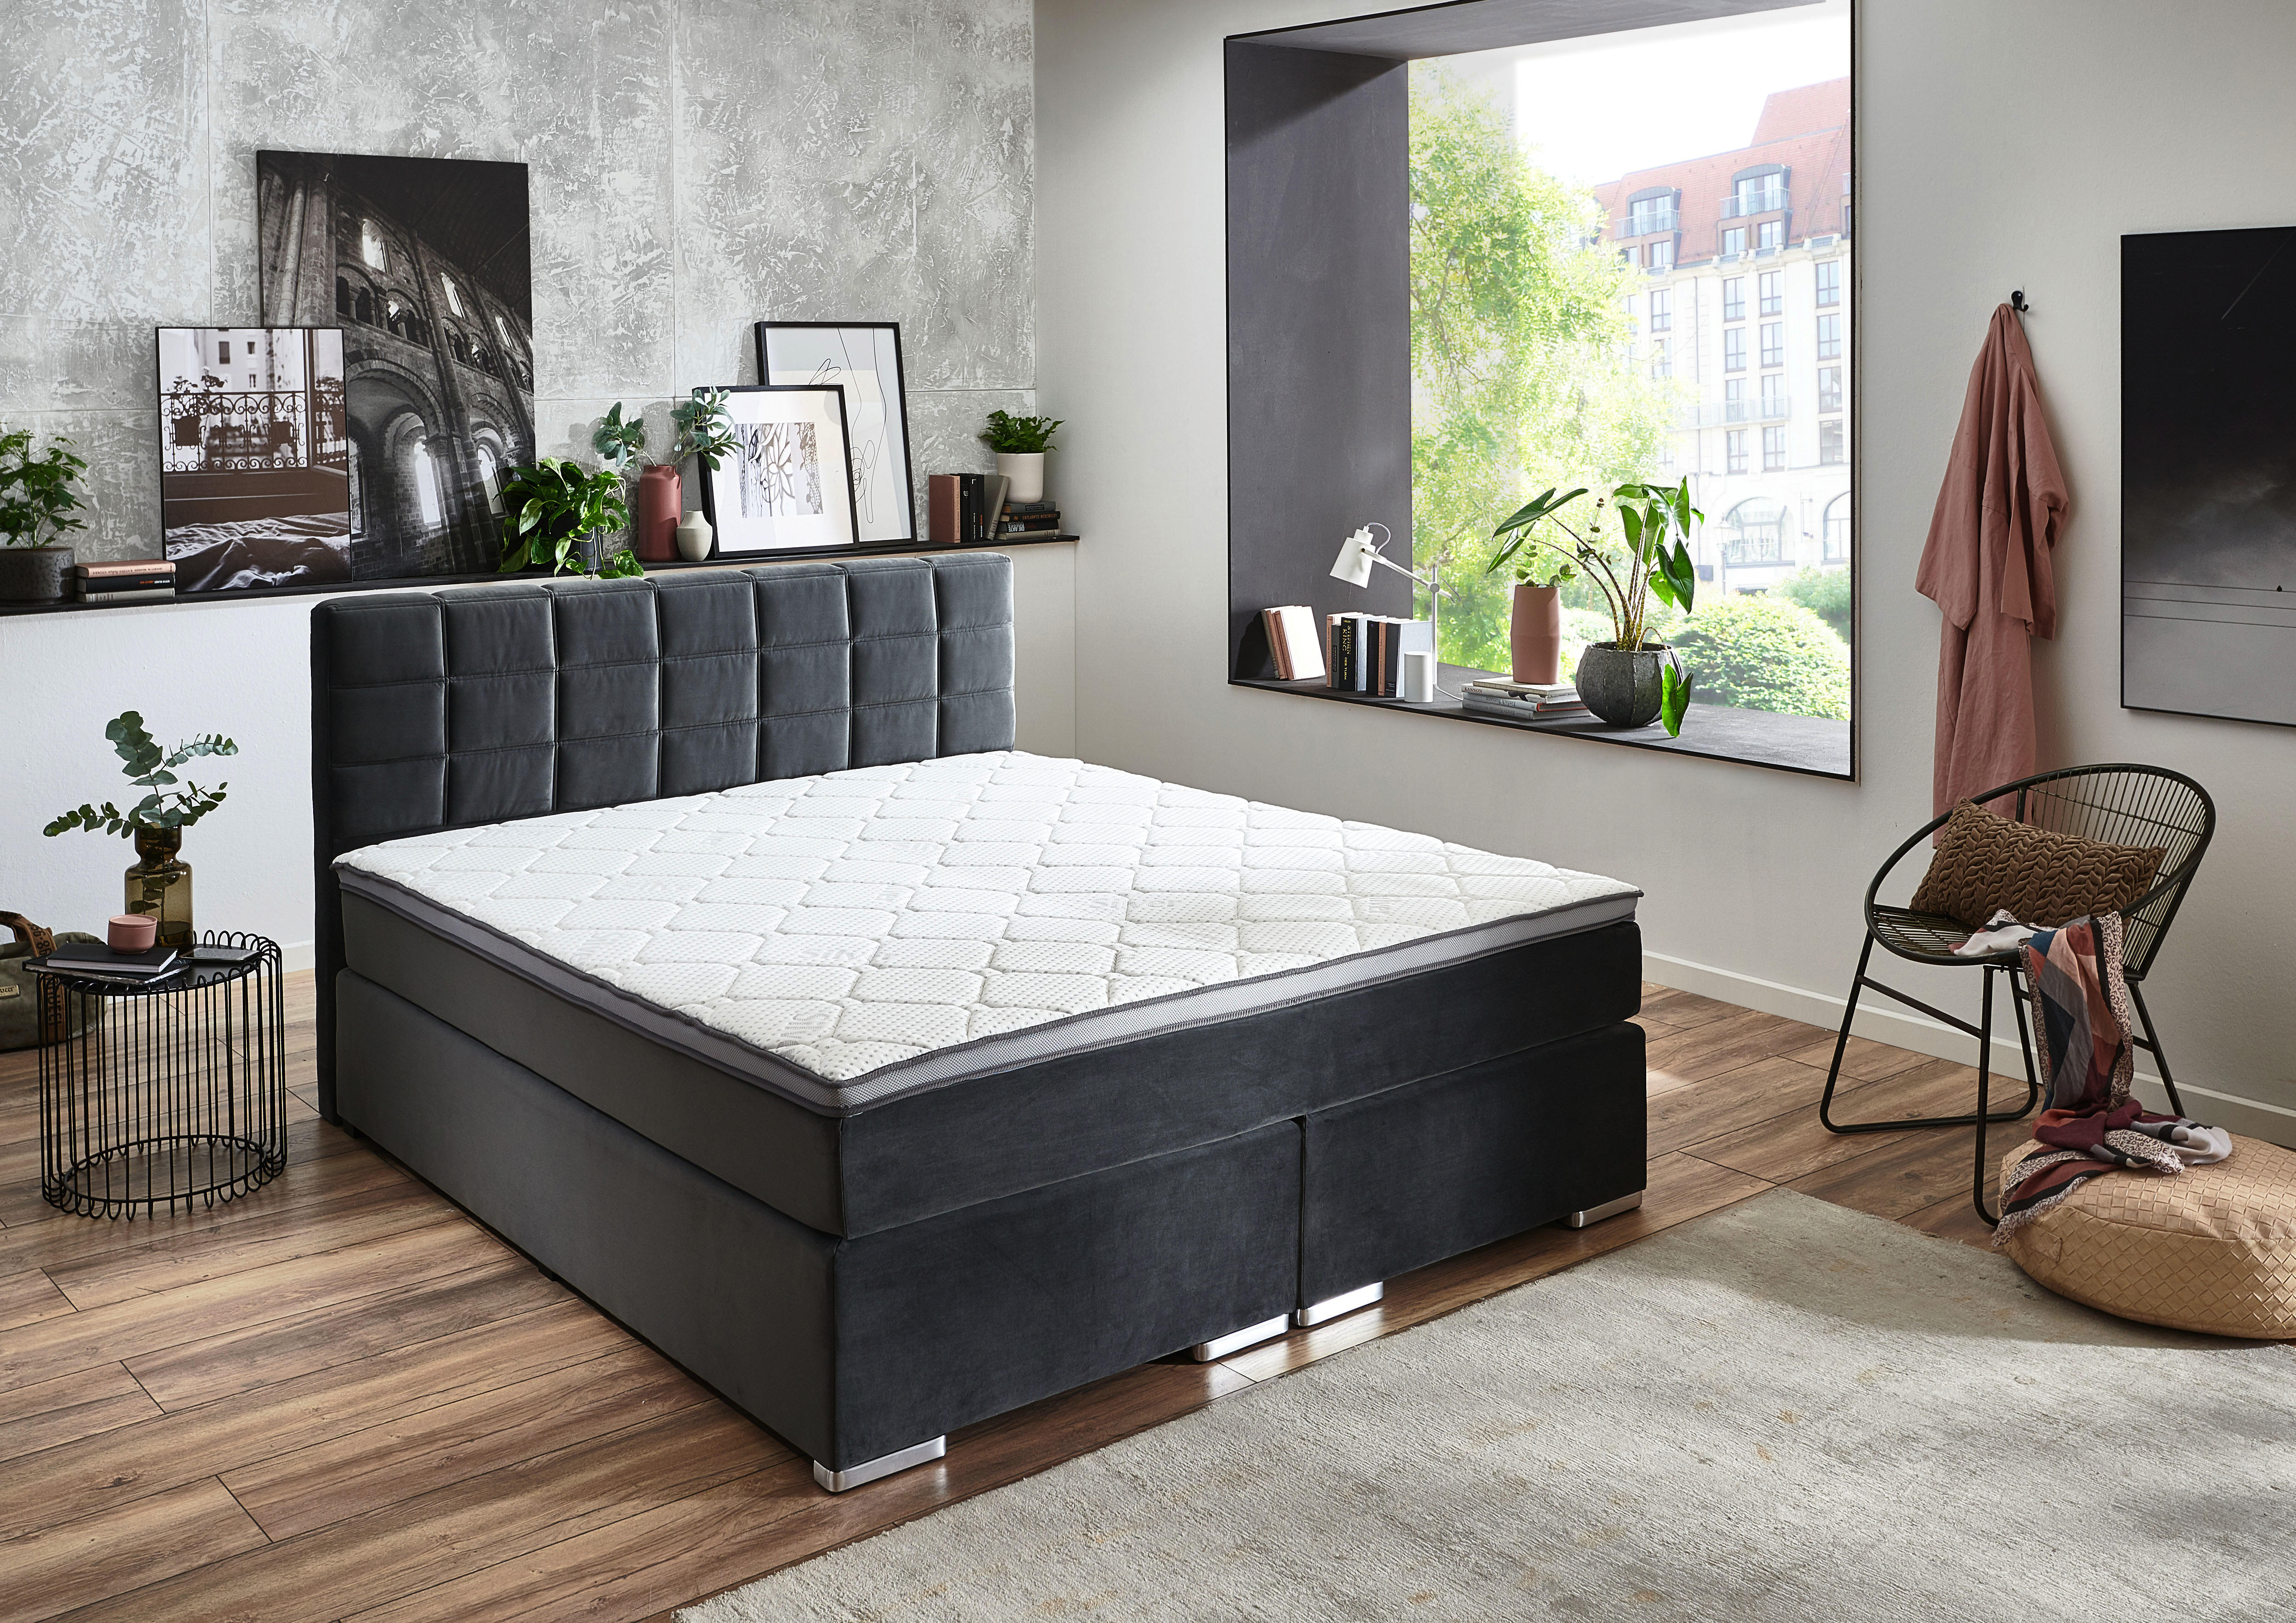 Bett mit matratze 180x200 - Die preiswertesten Bett mit matratze 180x200 ausführlich analysiert!